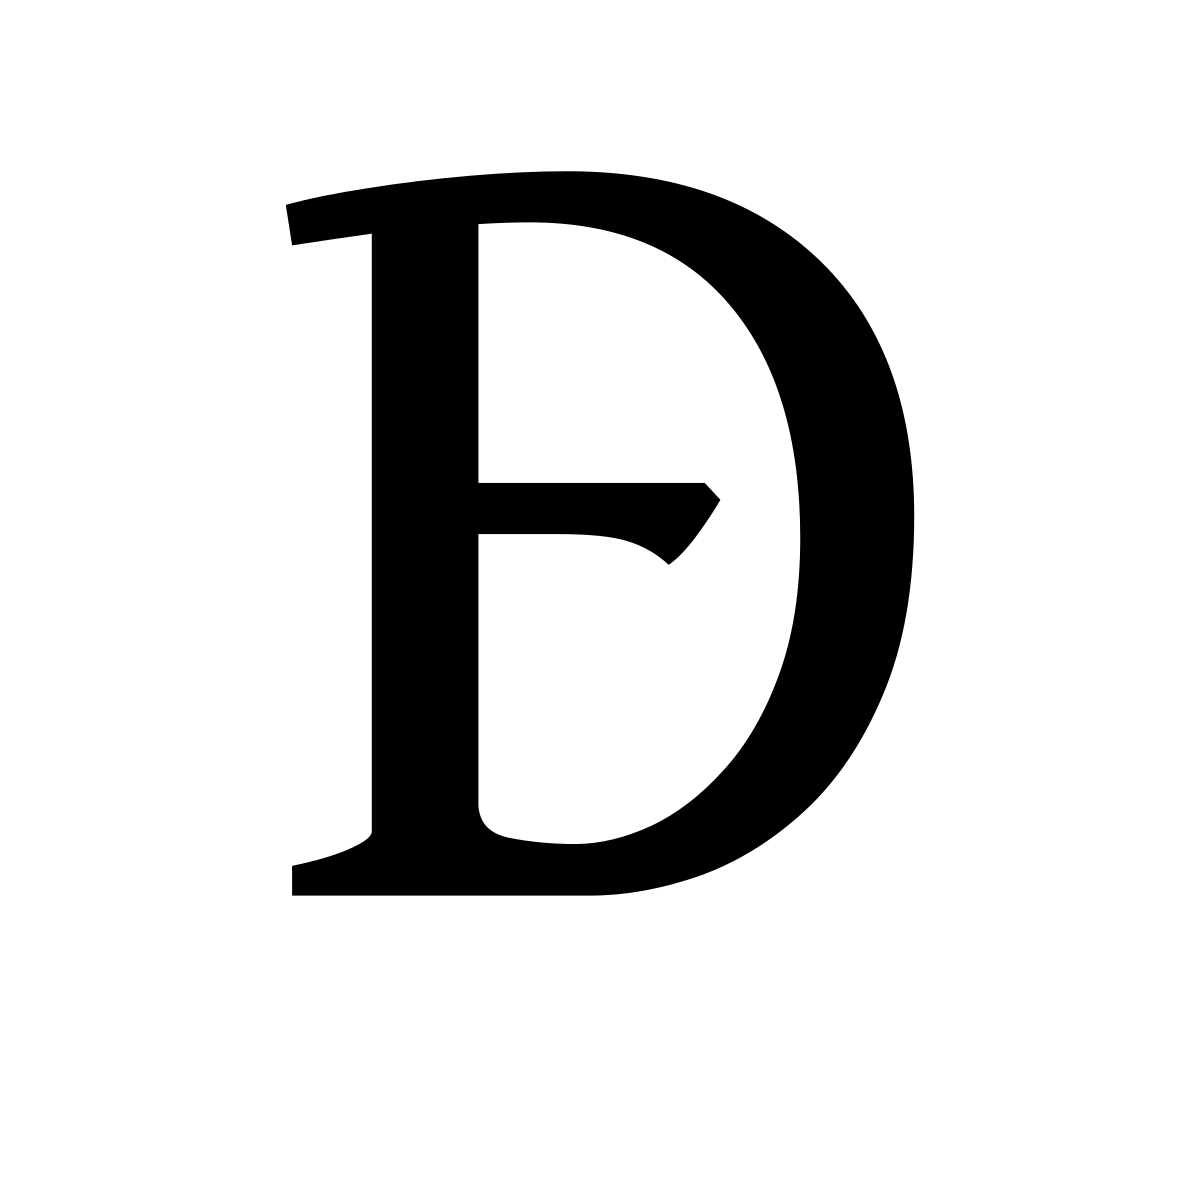 AUTHENTIC Verre transparent H 15 cm - Ø 9,5 cm